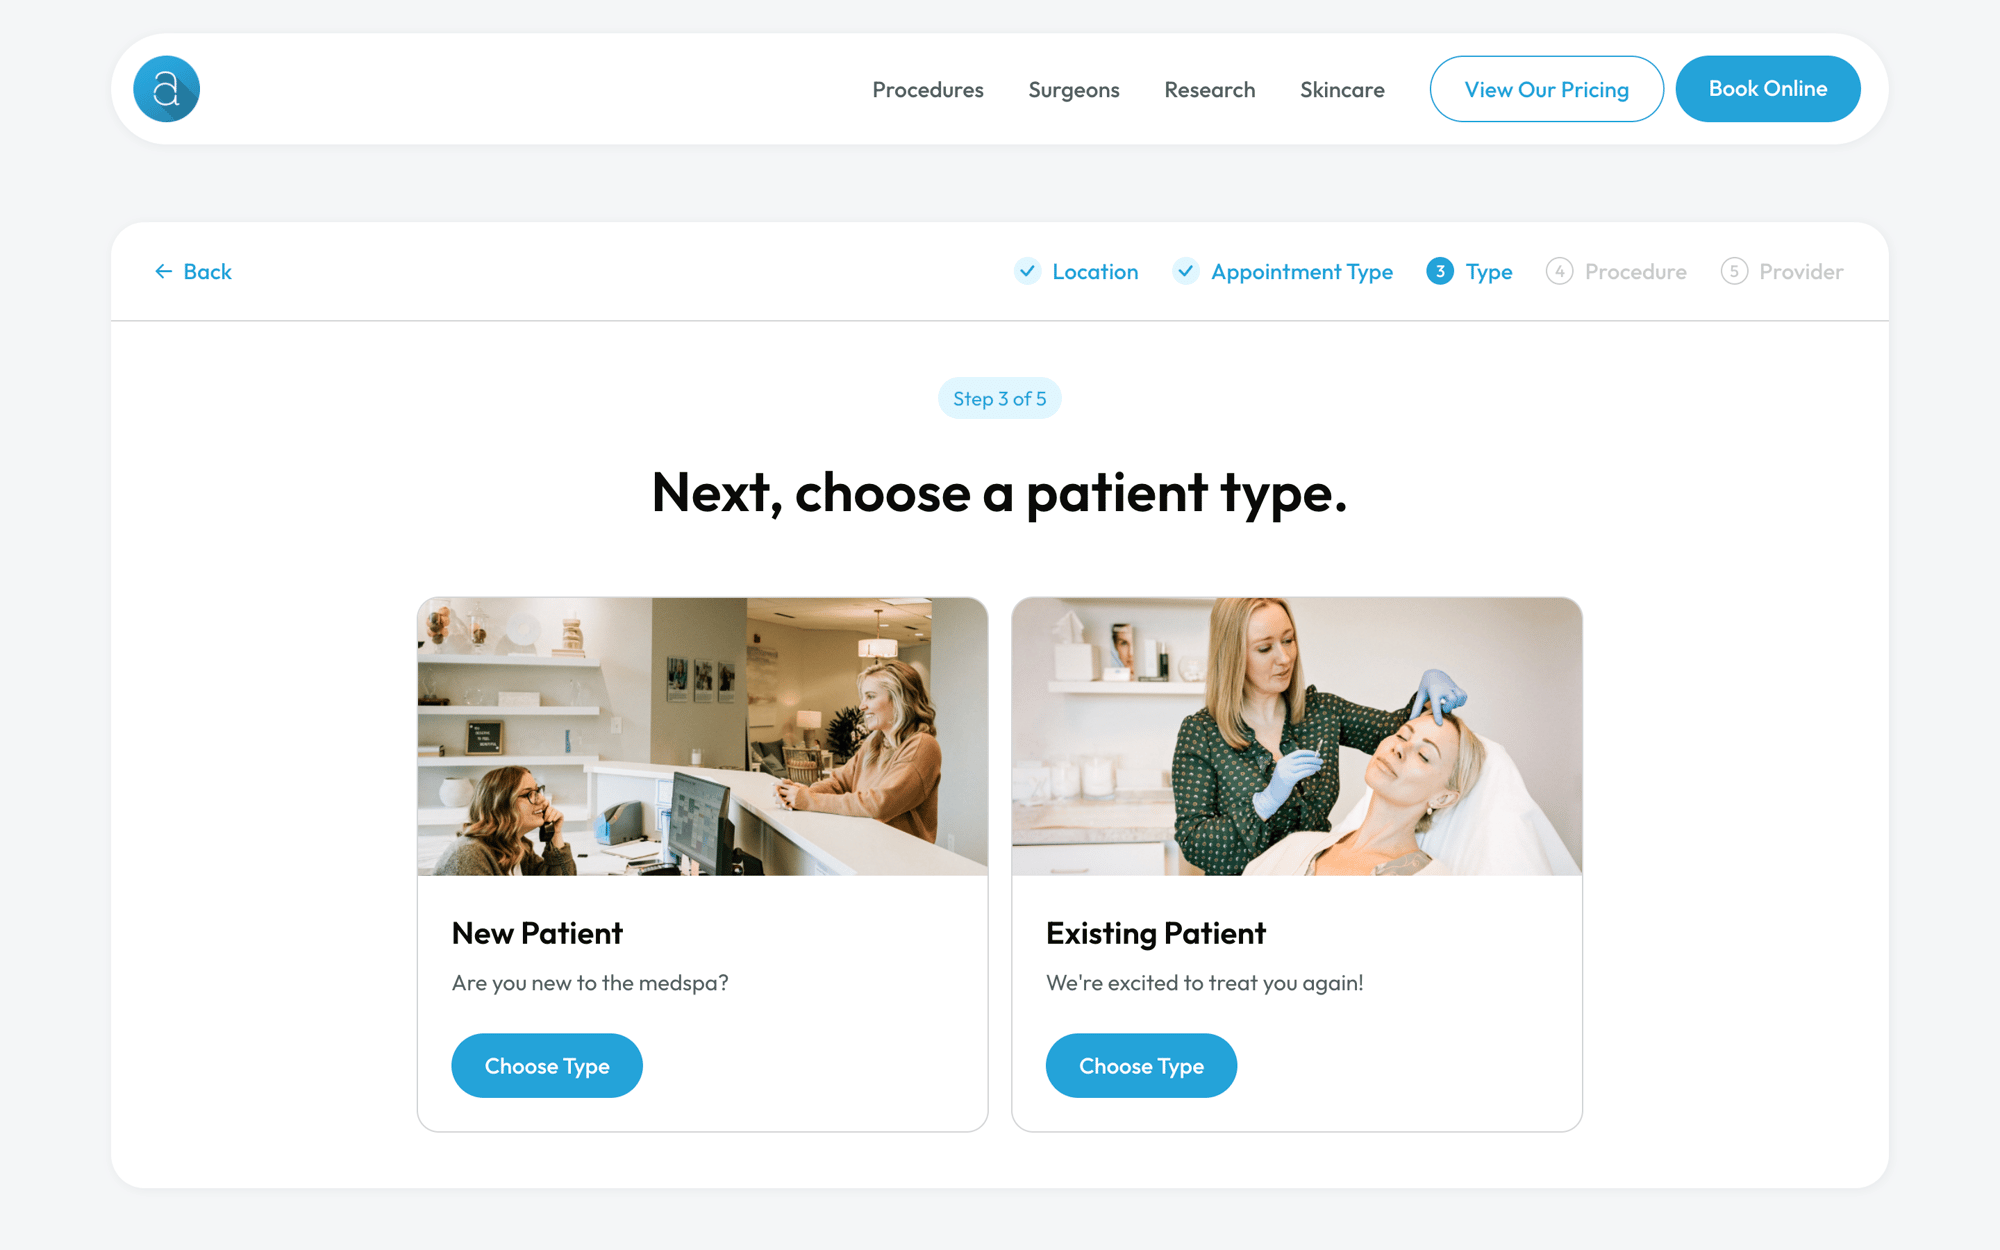 Choose a patient type